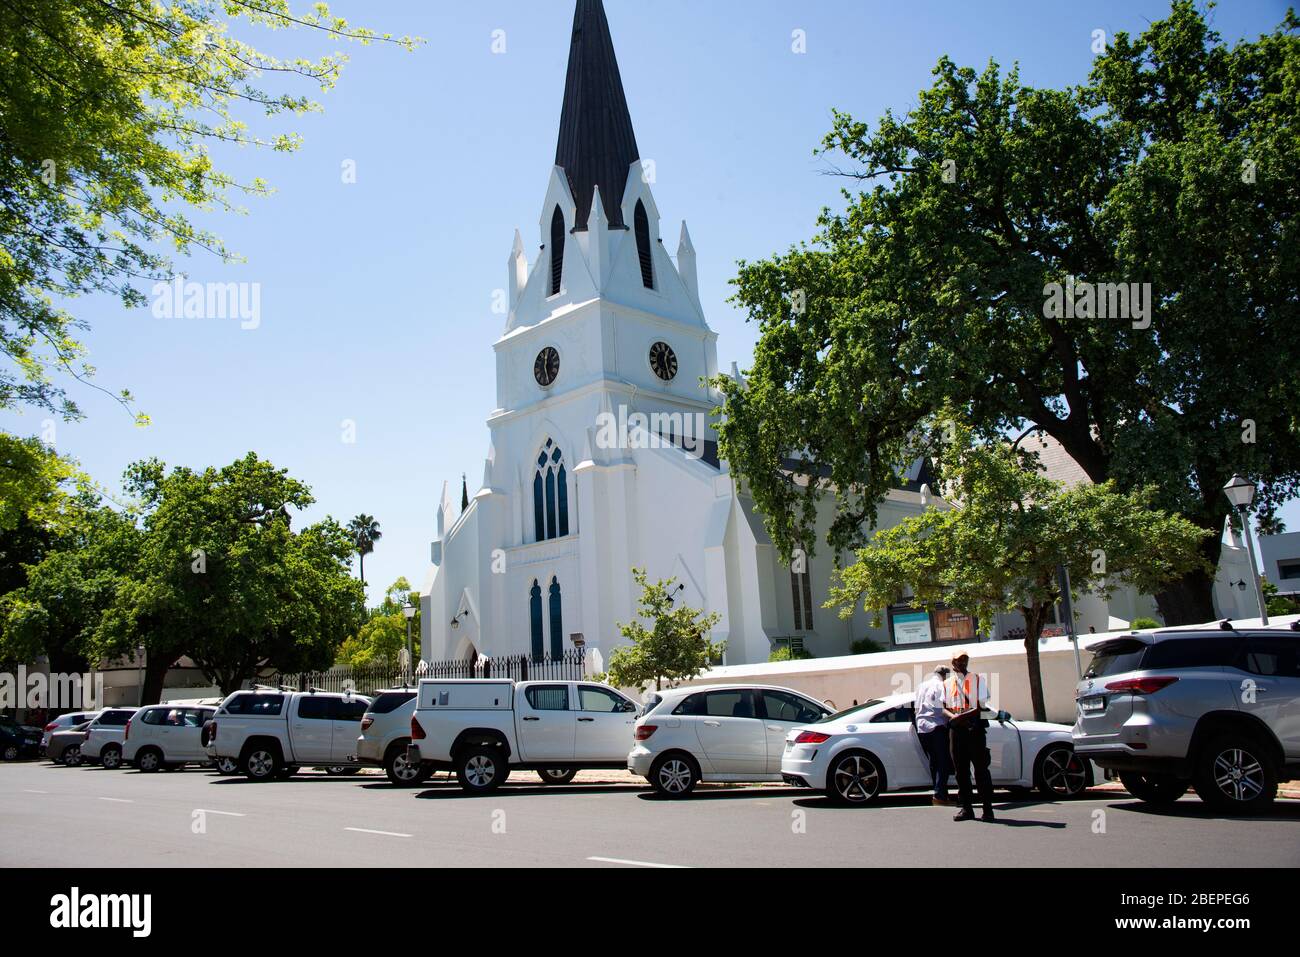 La belle église blanchie à la chaux est fière au coeur de Stellenbosch. L'Église réformiste néerlandaise la gère et fournit un service à l'Université Stellenbosch. Il est dans Church Street. Banque D'Images